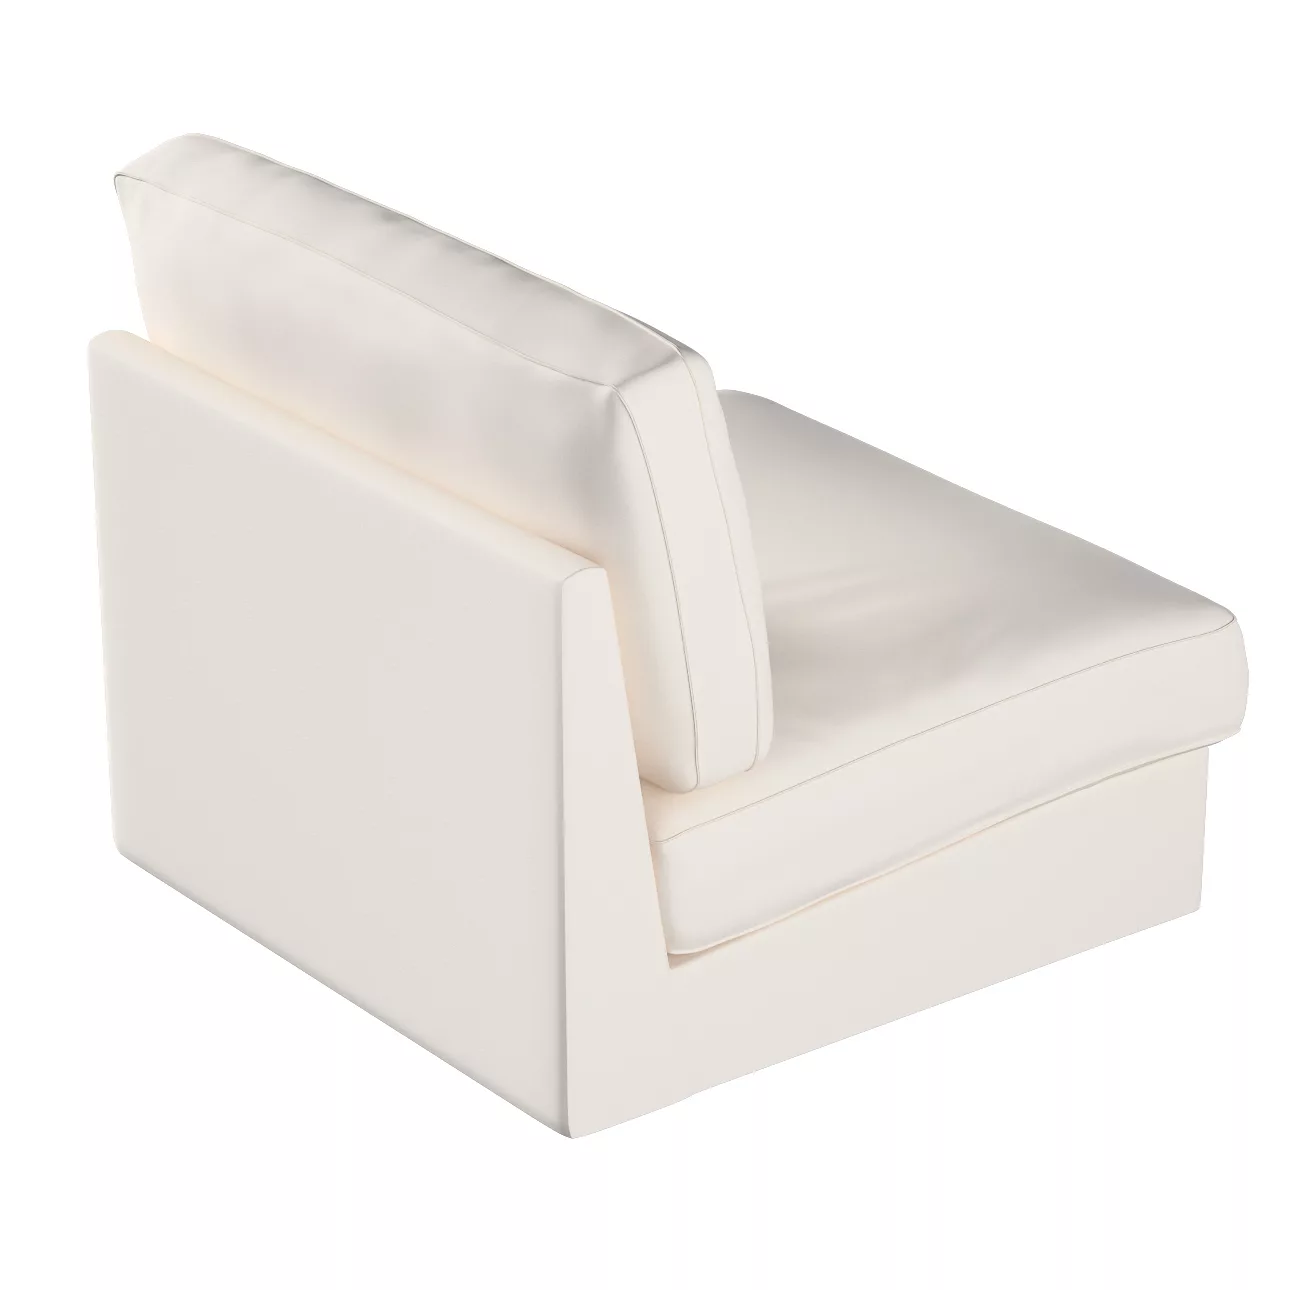 Bezug für Kivik Sessel nicht ausklappbar, naturweiß, Bezug für Sessel Kivik günstig online kaufen